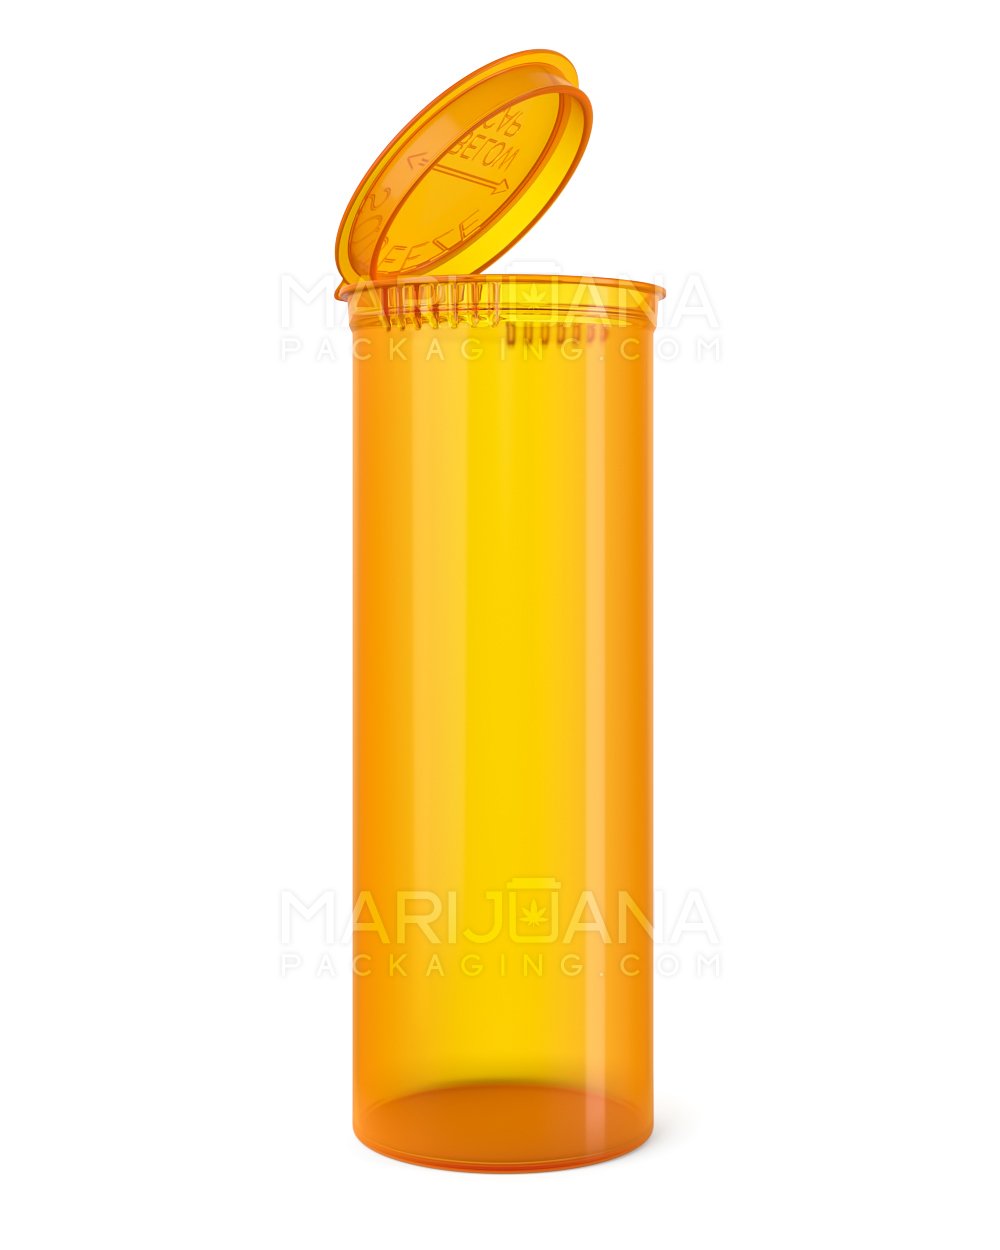 Child Resistant Transparent Amber Pop Top Bottles | 60dr - 14g | Sample - 1